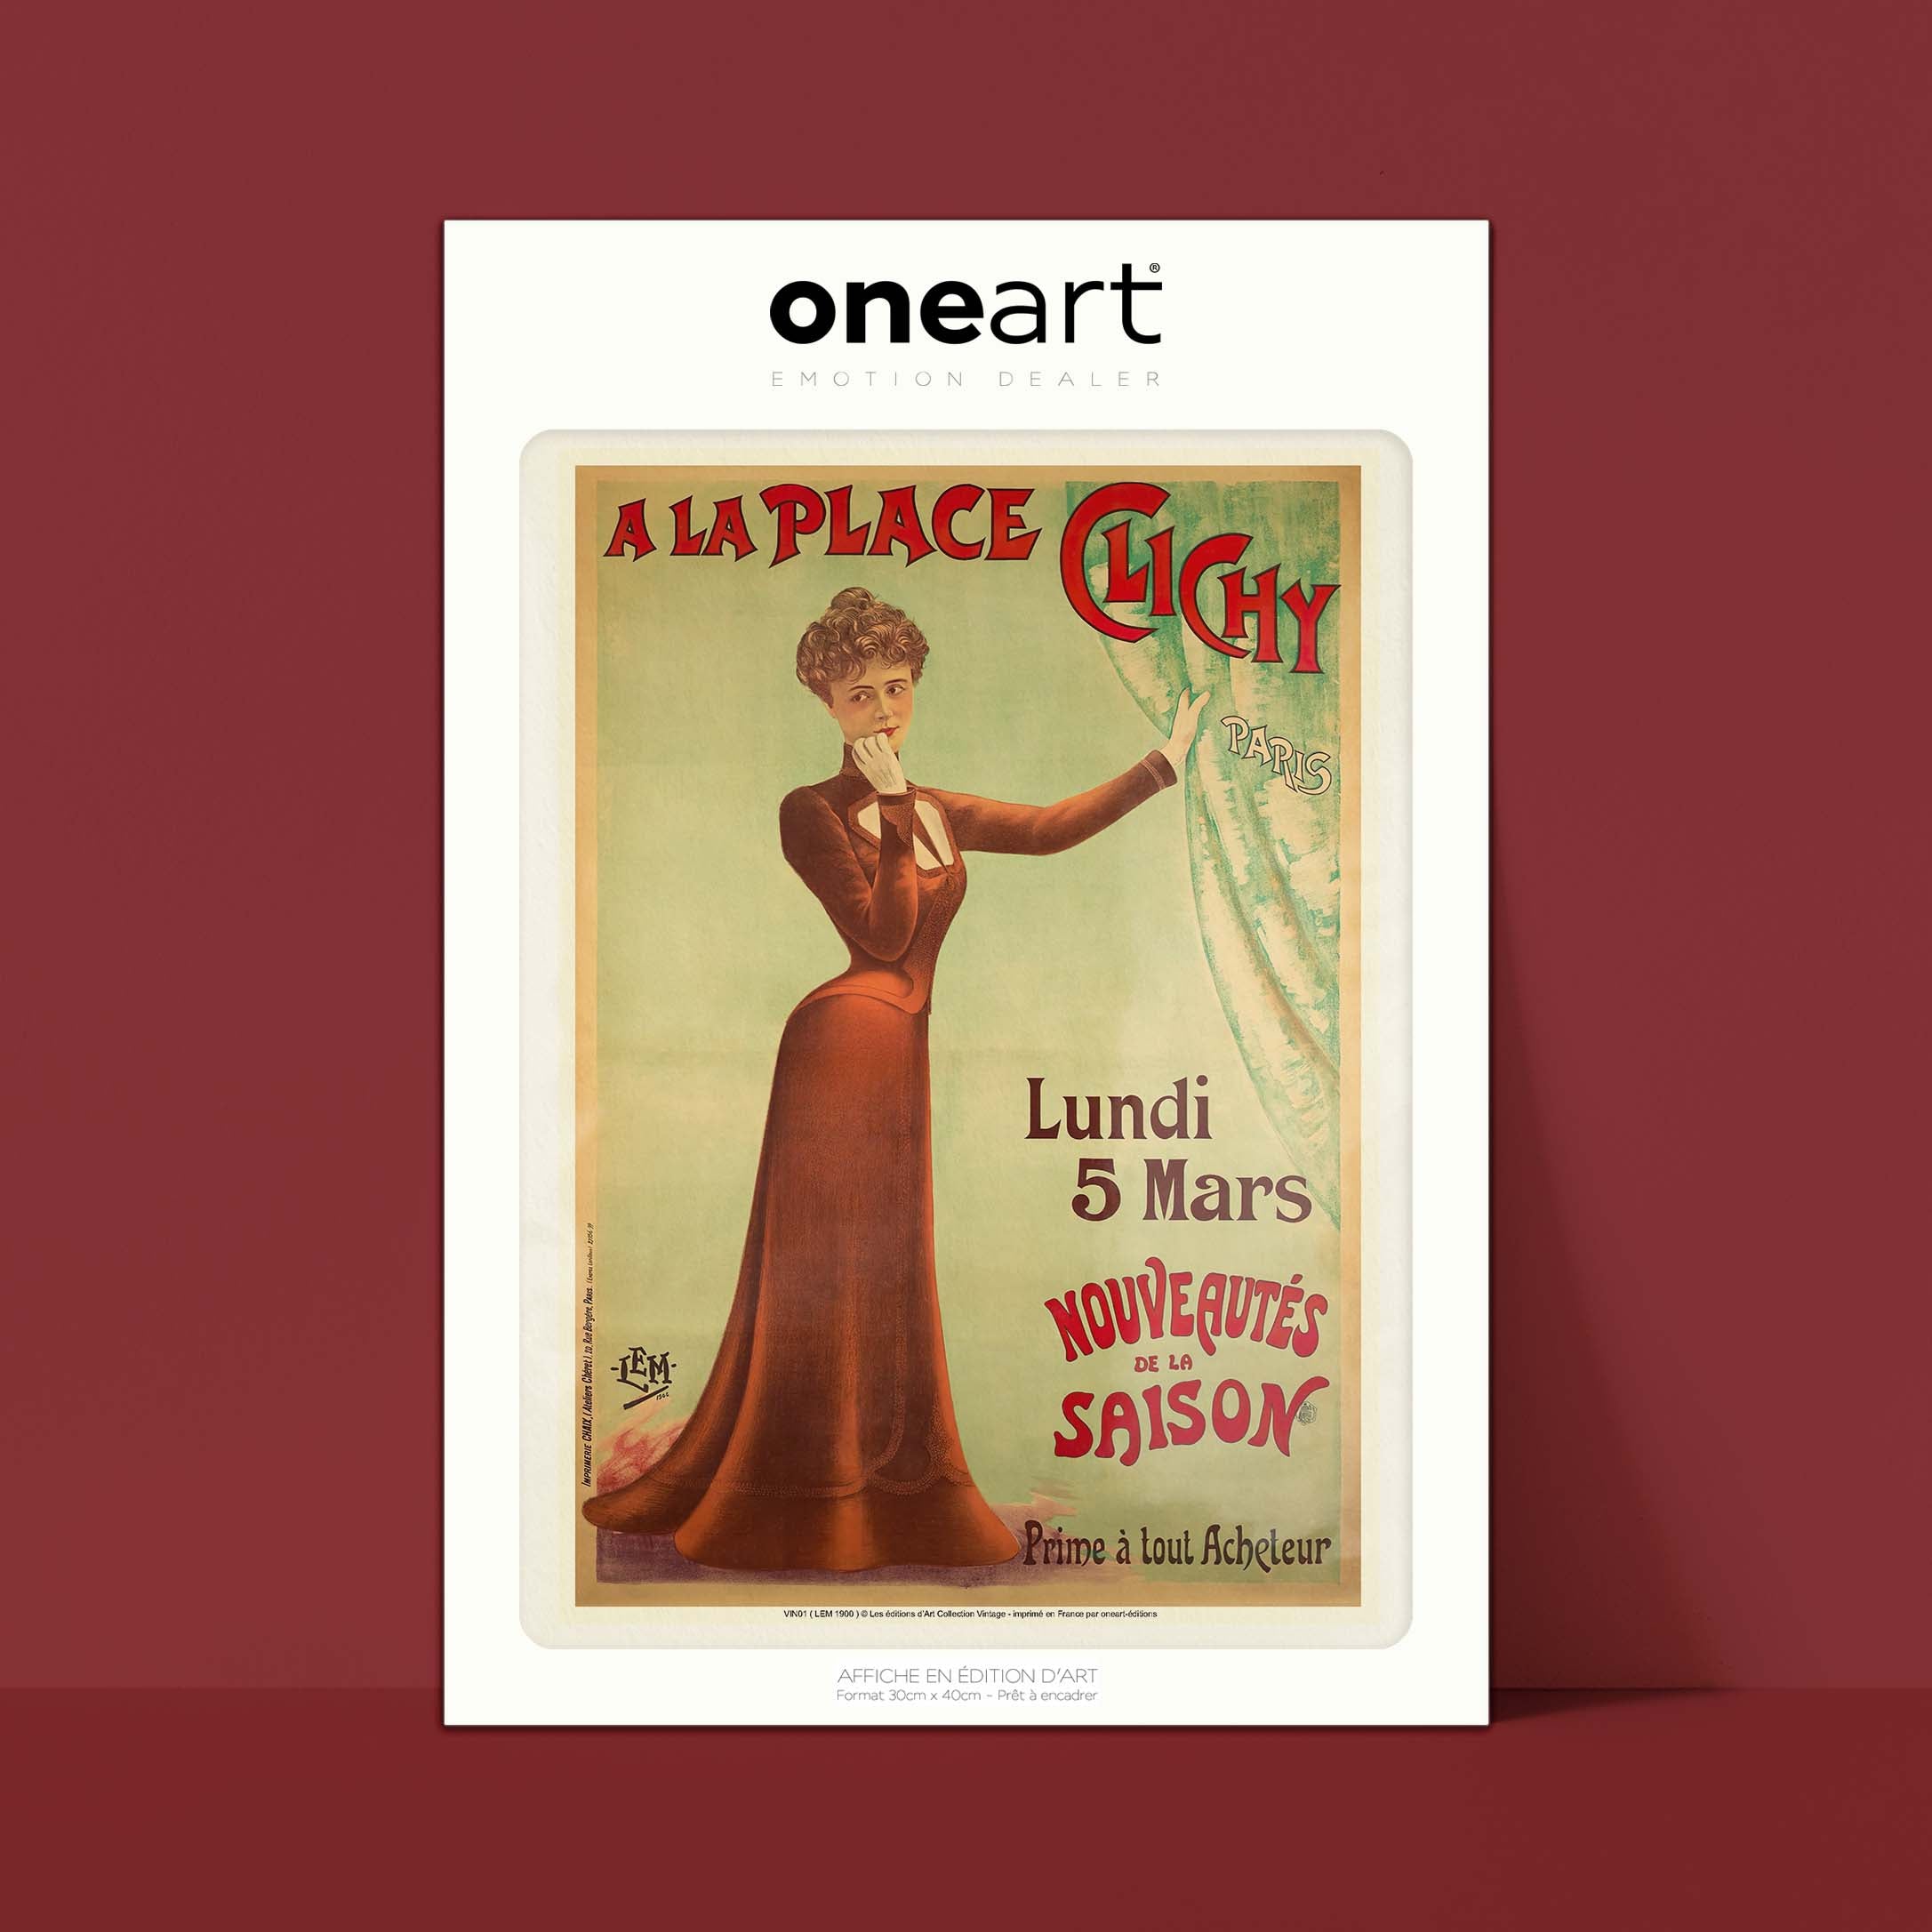 Affiche publicité vintage - A la place Clichy-oneart.fr